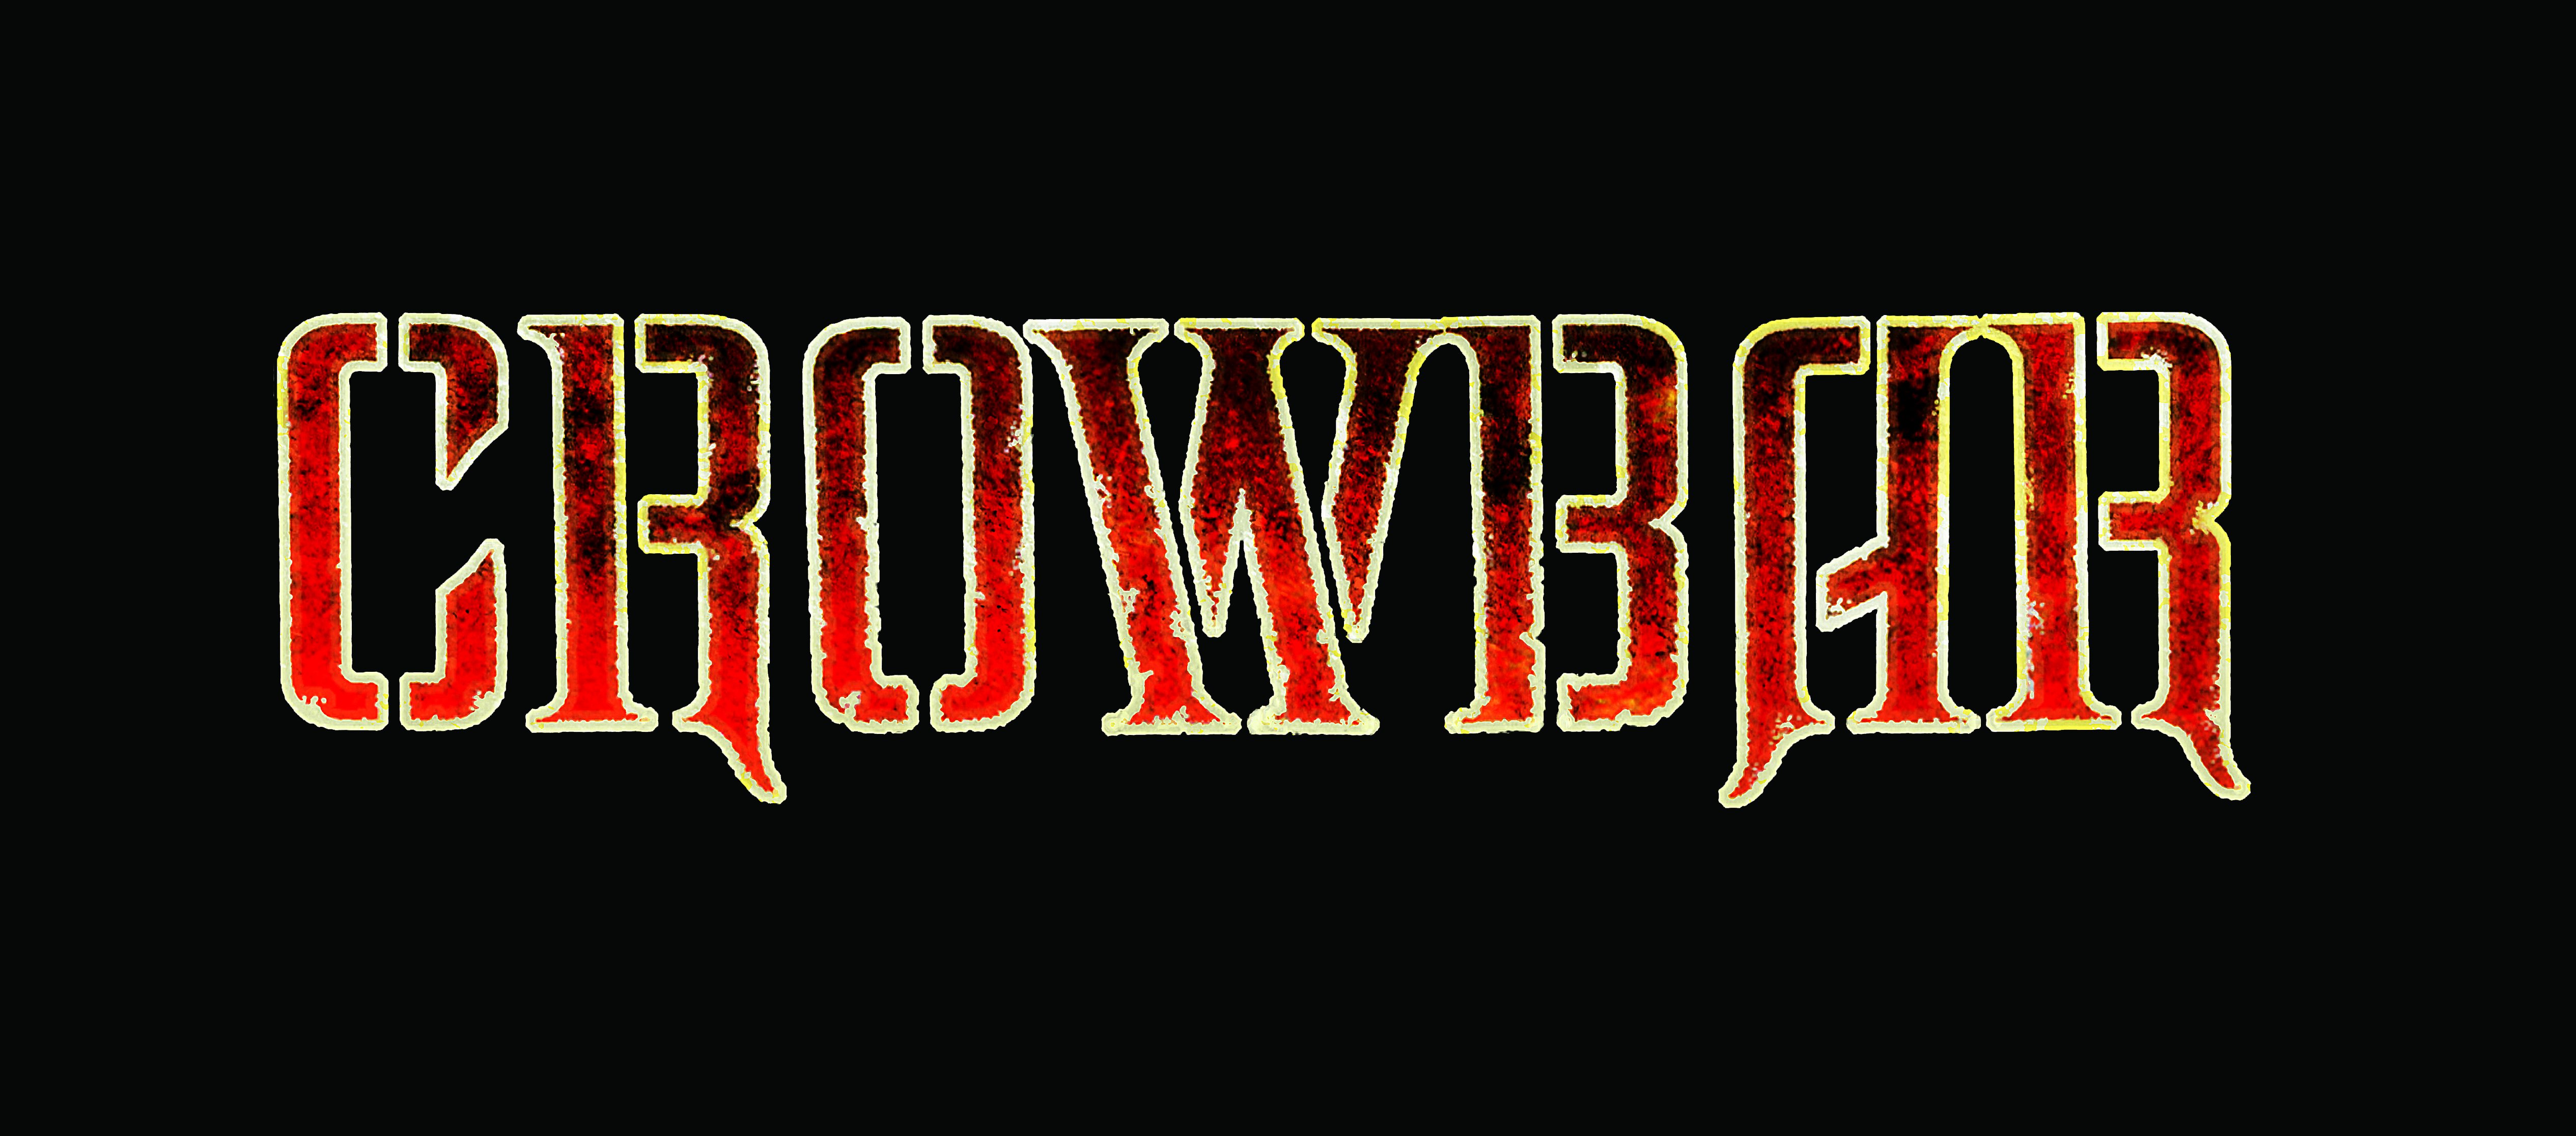 crowbar, Sludge, Metal, Heavy, Doom Wallpaper